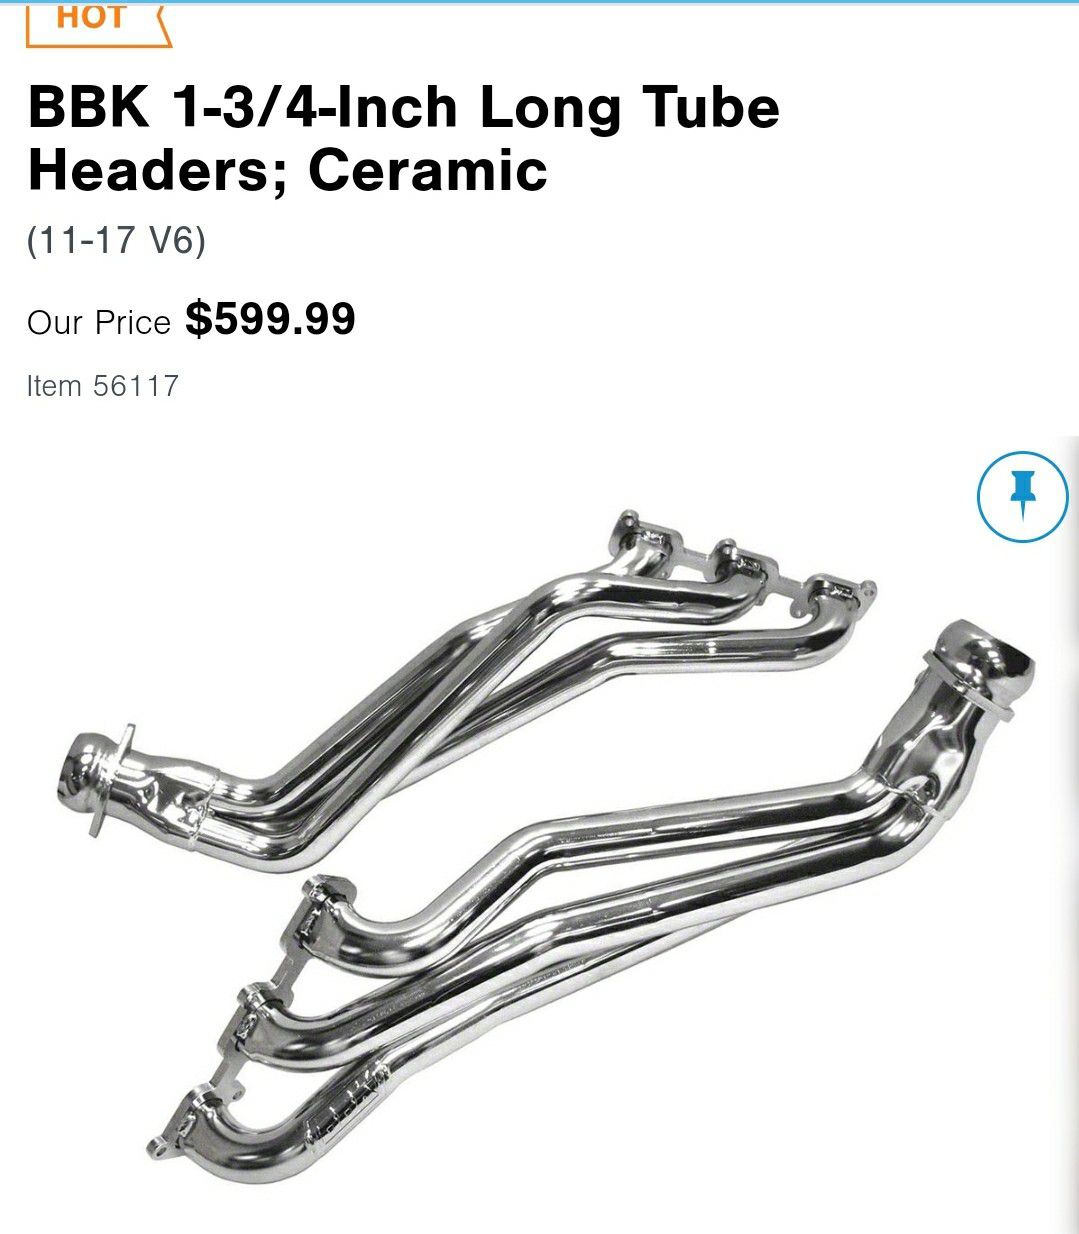 BBK Long Tube Headers Ceramic for Mustang ( 11-17 V6)